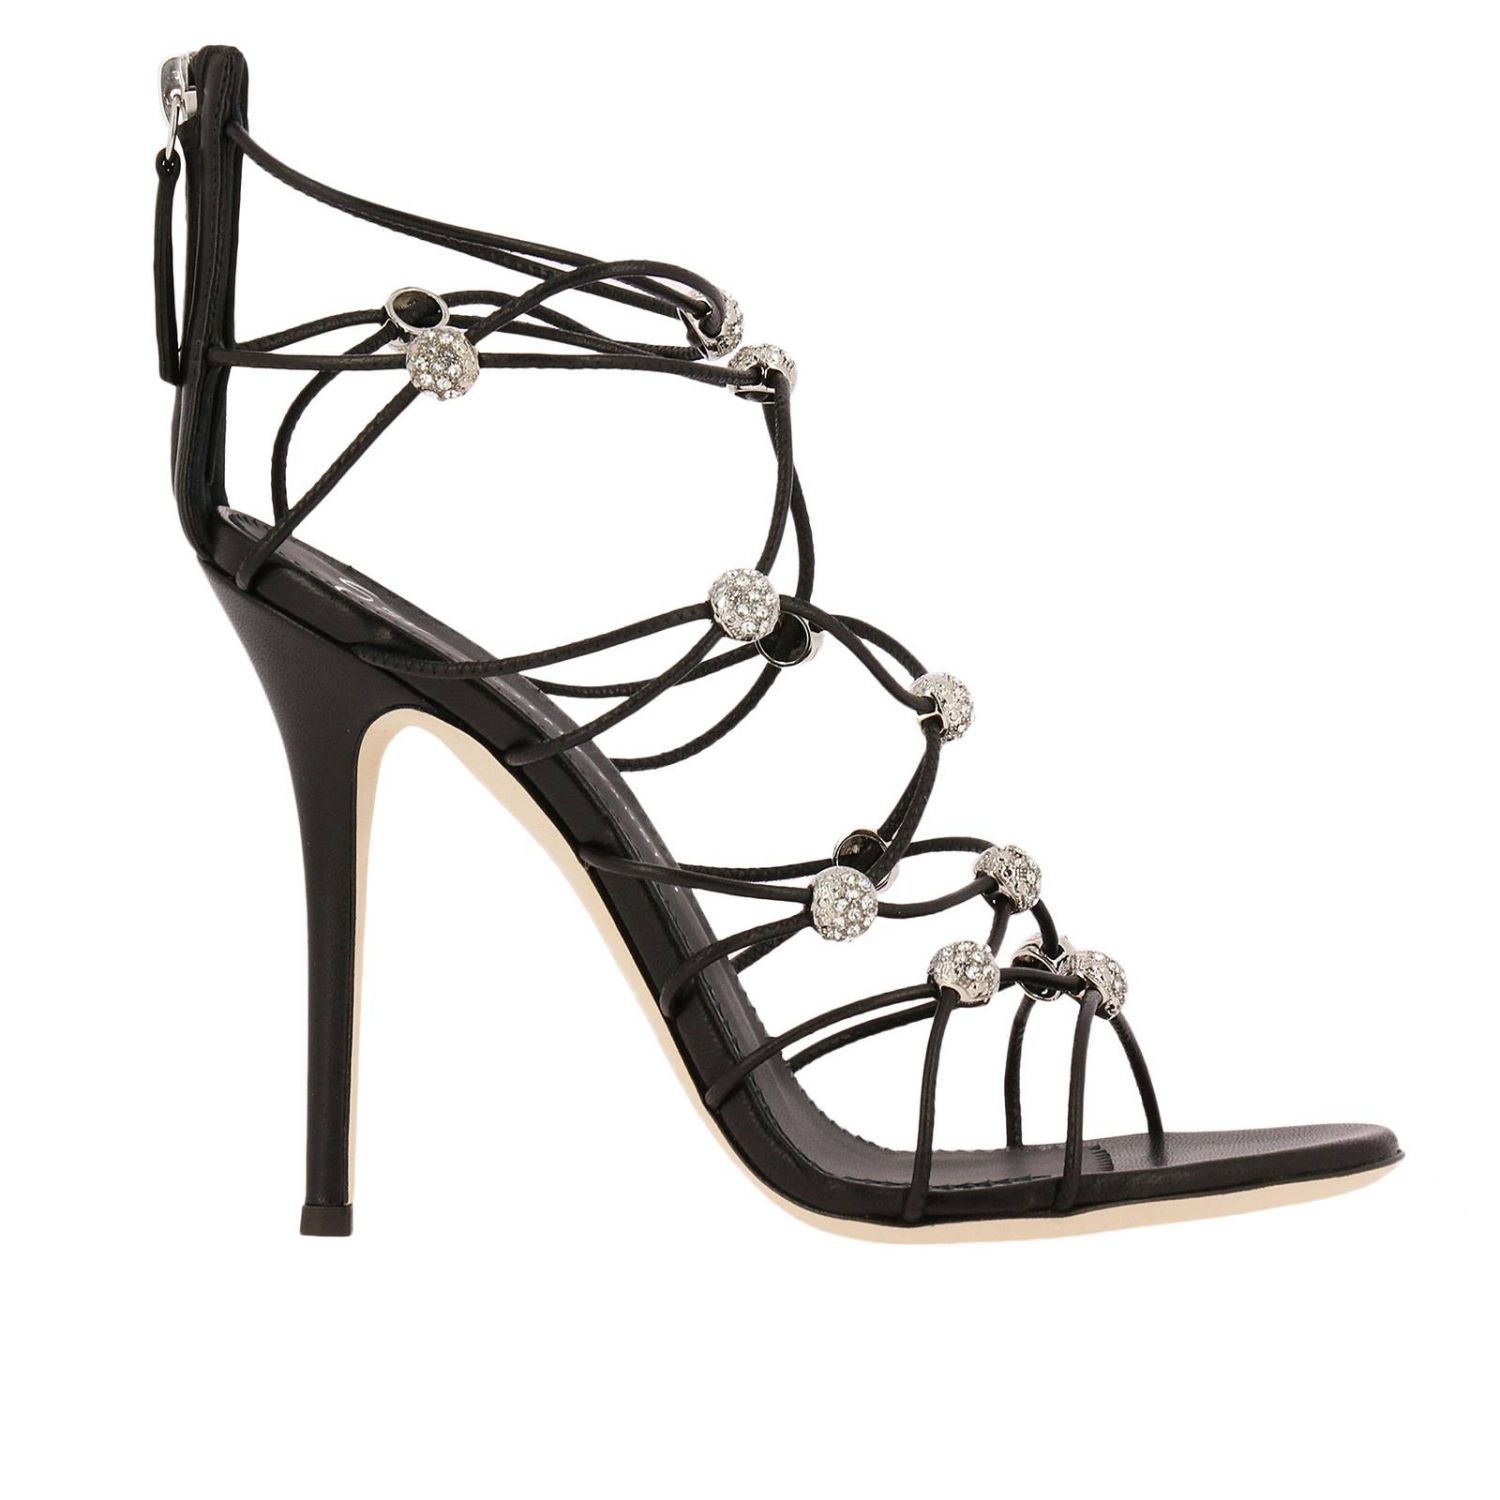 Flat sandals women Giuseppe Zanotti Design | Heeled Sandals Giuseppe ...